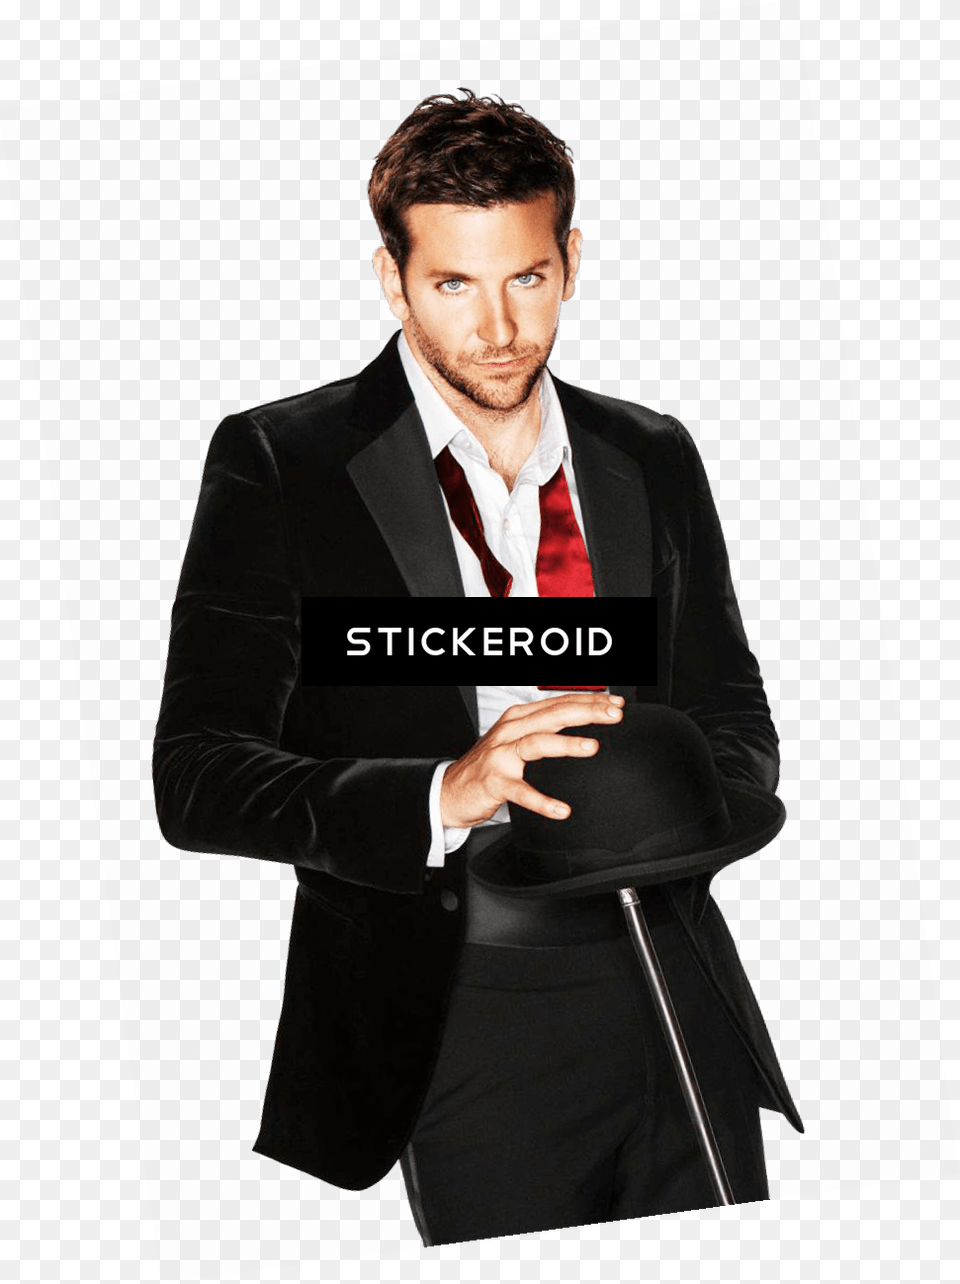 Suitclothingformal Weartuxedowhite Collar Bradley Cooper In Tuxedo, Accessories, Tie, Suit, Formal Wear Png